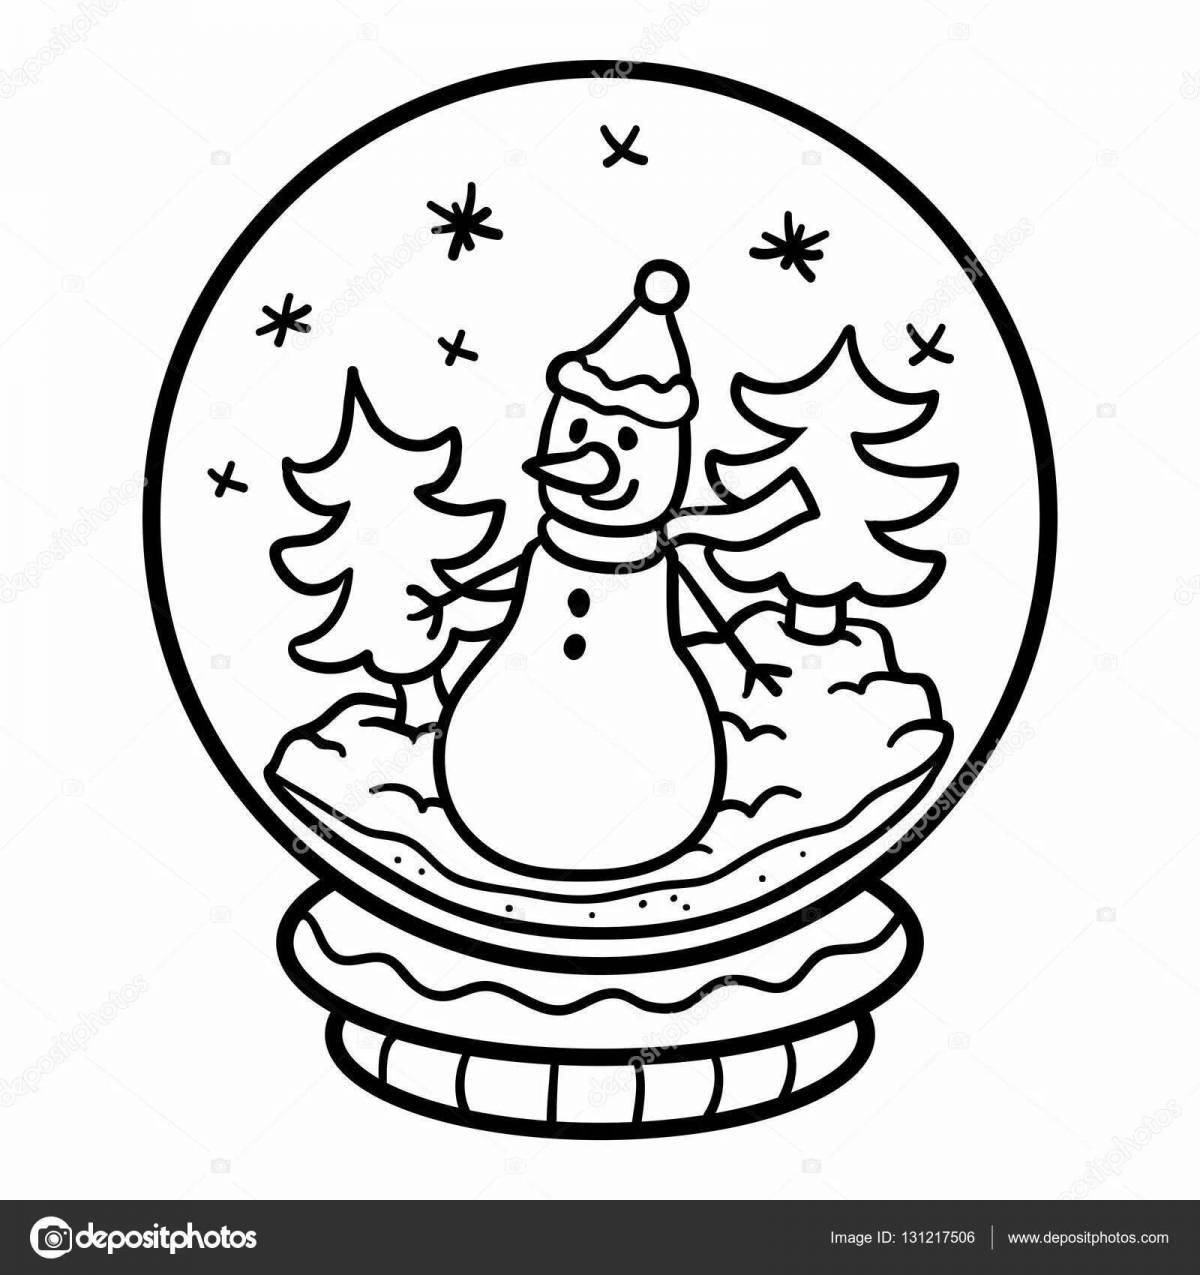 Shiny Christmas ball with snow